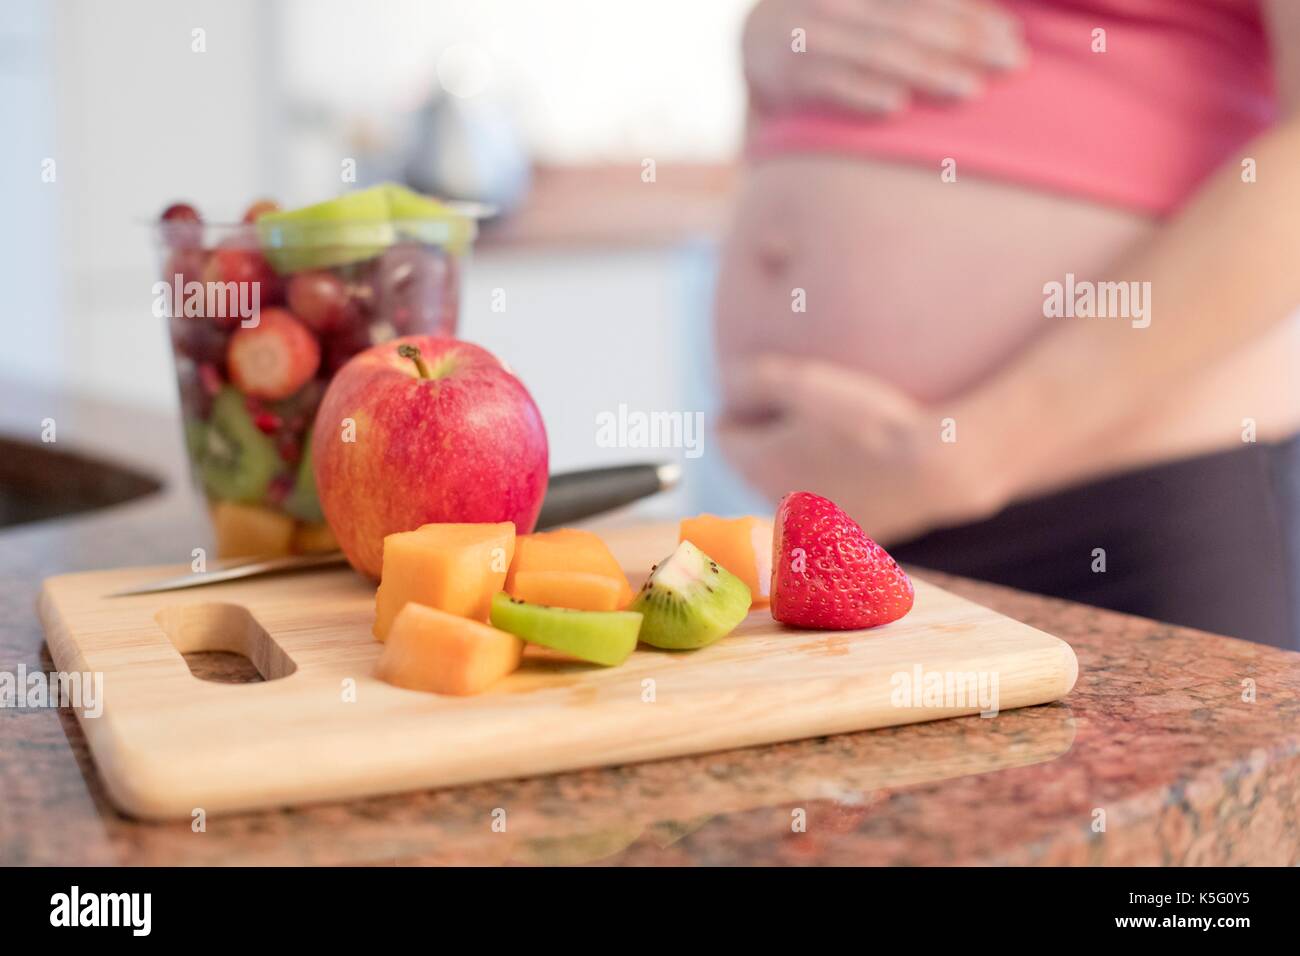 Appena tagliate la frutta a bordo con la donna incinta in background. Foto Stock